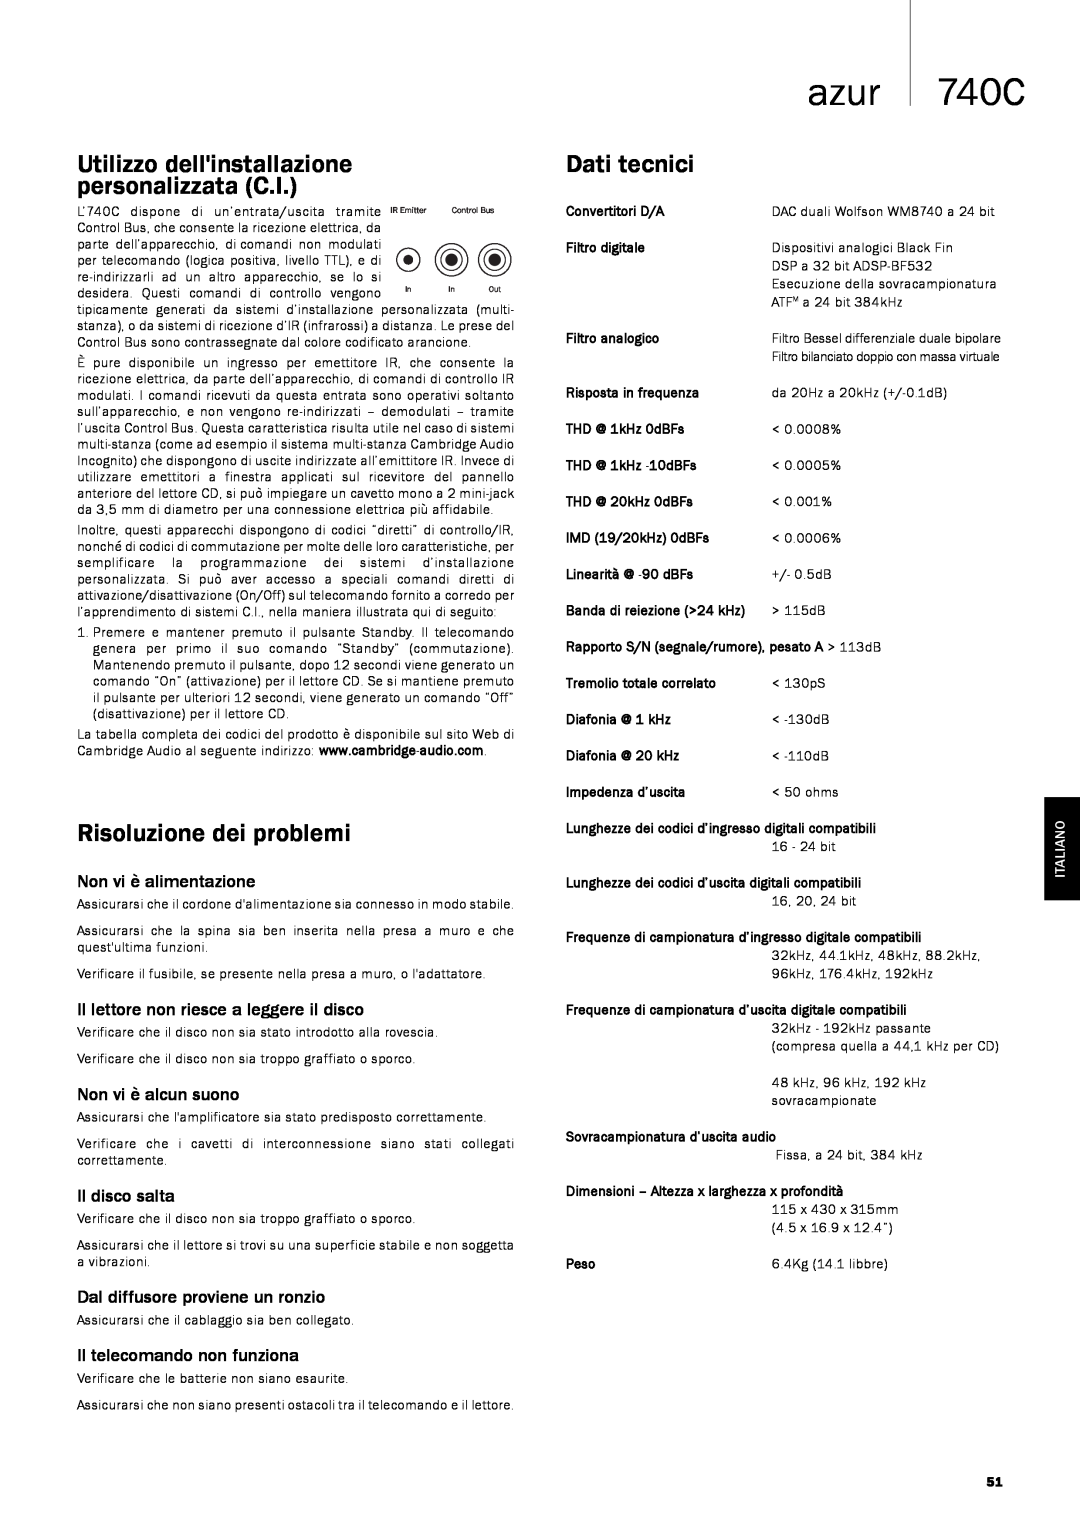 Cambridge Audio 740C Utilizzo dellinstallazione personalizzata C.I, Risoluzione dei problemi, Dati tecnici, azur, Italiano 